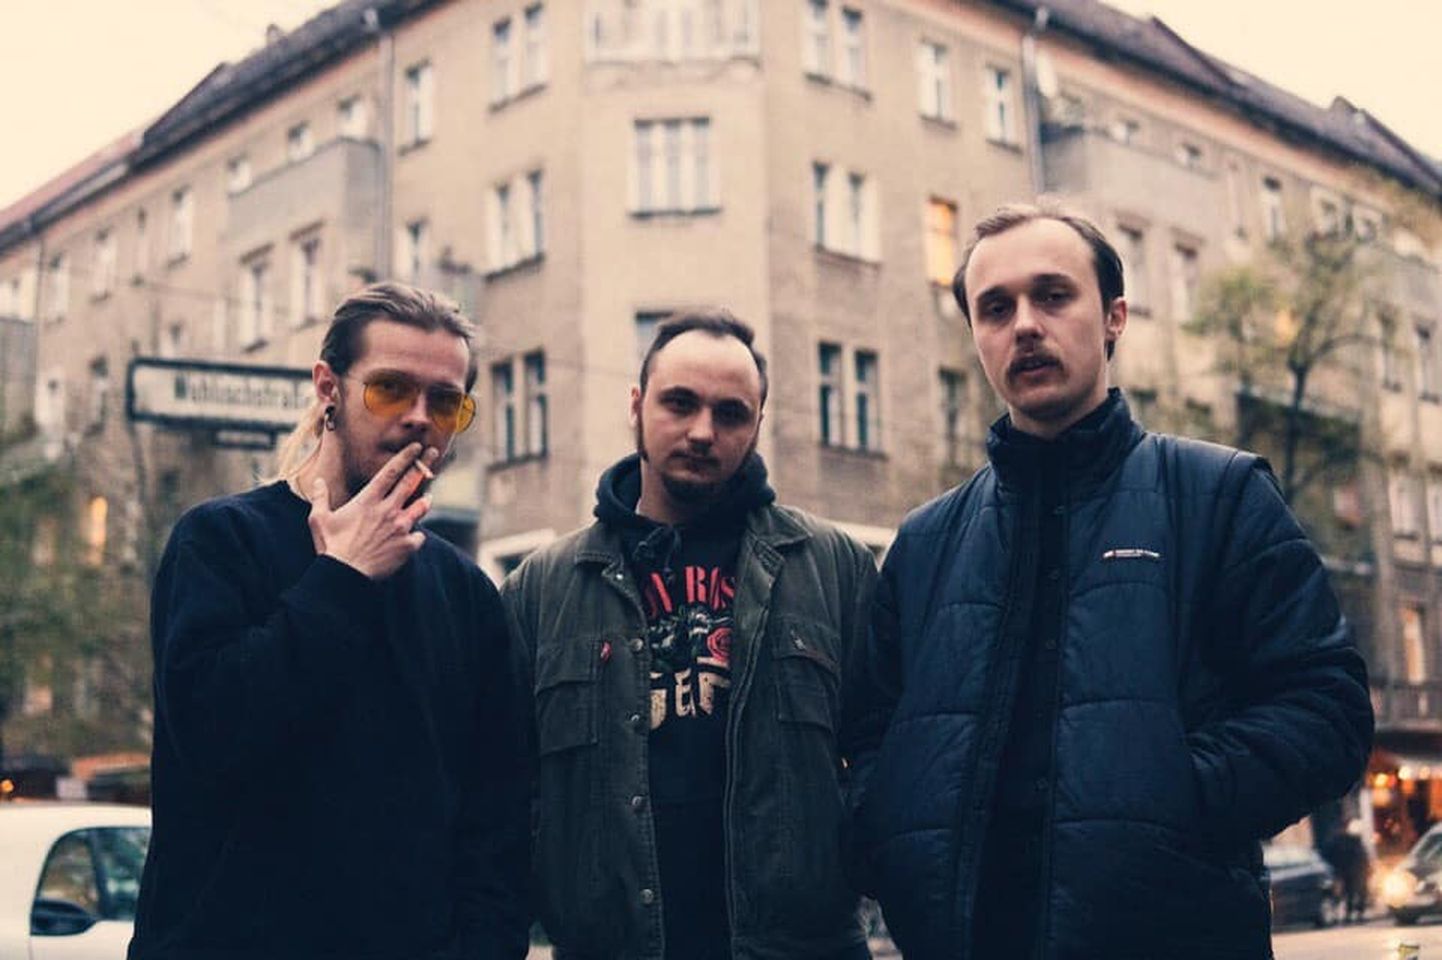 Белорусская группа "Молчат Дома" из Минска, столицы Беларуси, работает на стыке пост-панка, new wave и мрачного синти-попа и играет музыку, которая одновременно и гнетущая, и танцевальная.